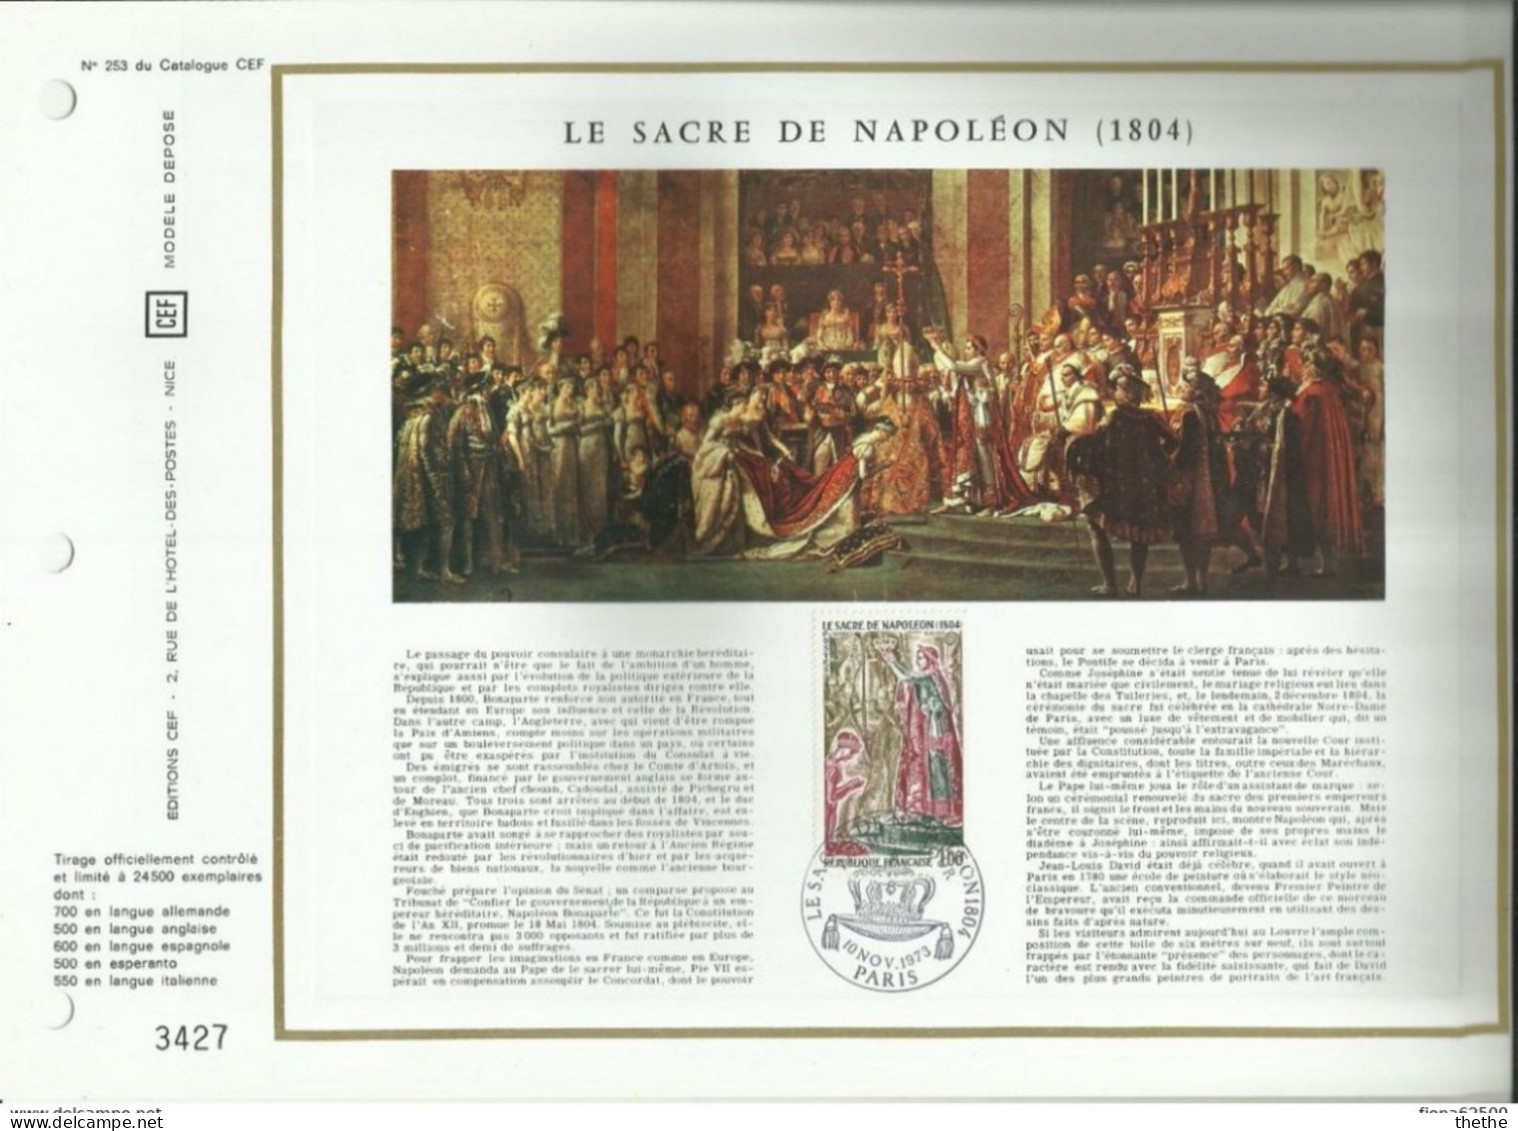 FRANCE - FDC - Le Sacre De Napoléon (1804) -   Feuillet N° 253 Du Catalogue CEF - 1970-1979